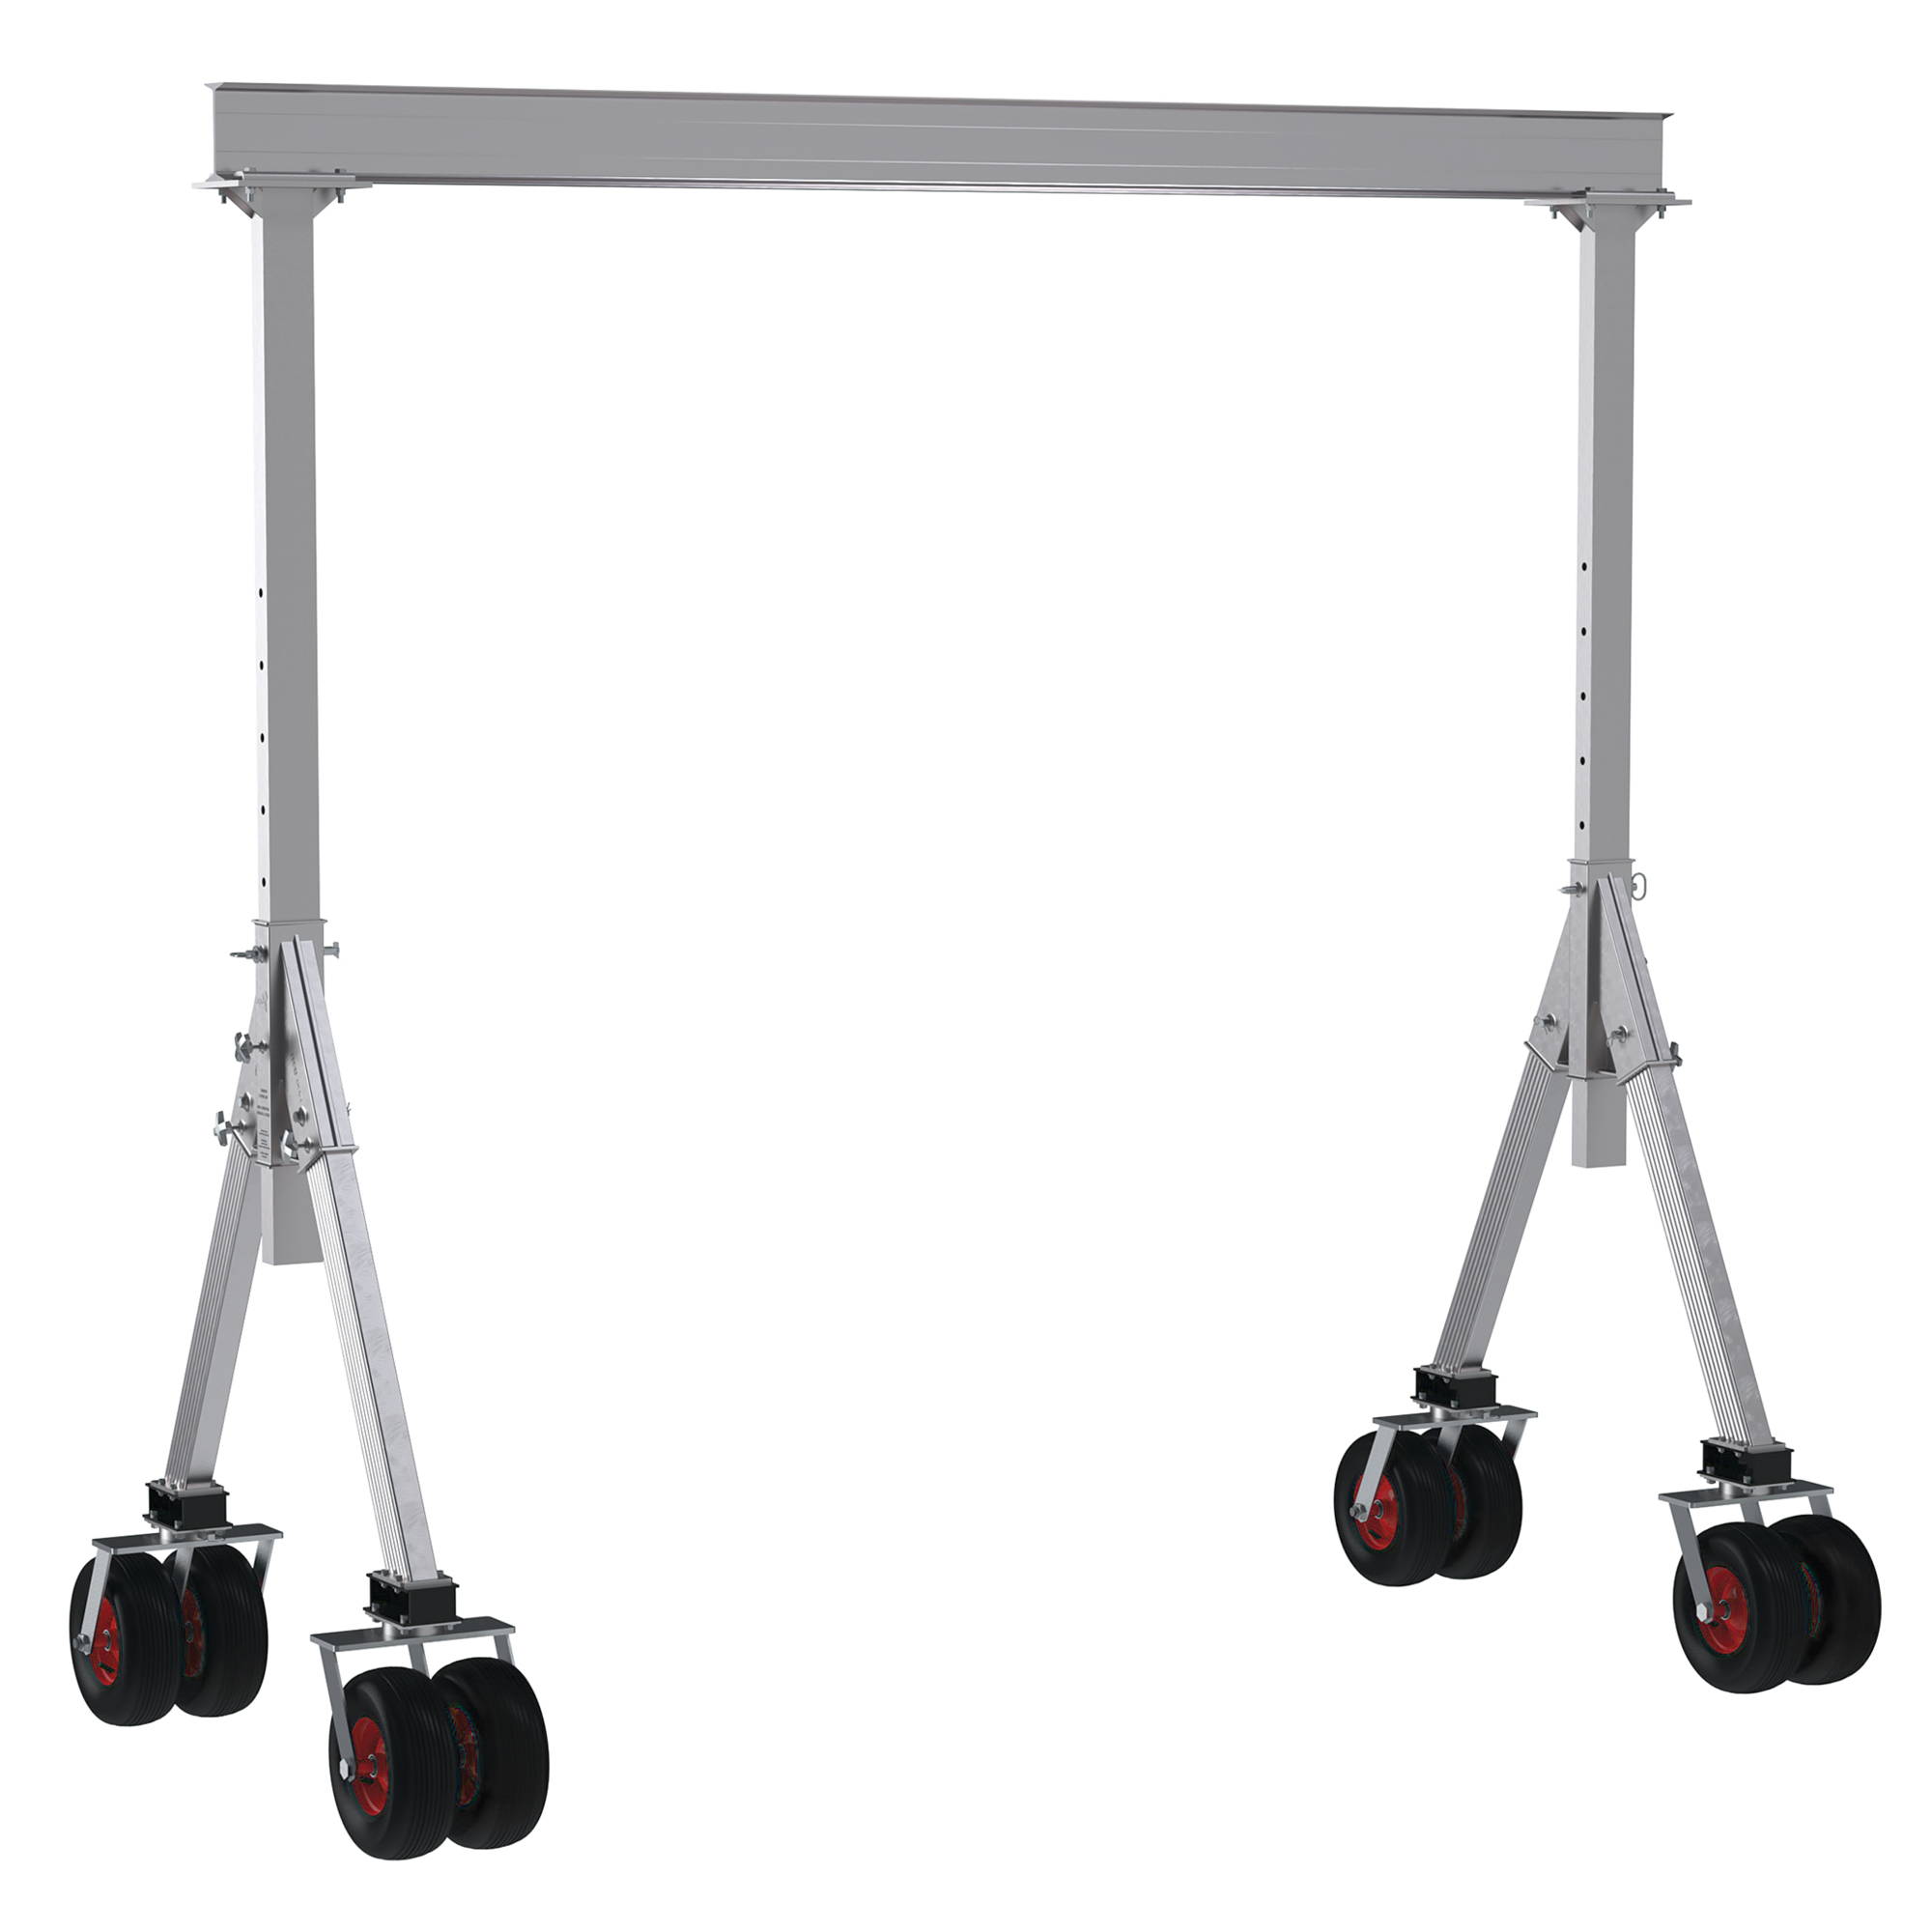 Vestil, Adjustable height aluminum crane 10ft. x 10ft., Load Capacity 4000 lb, Model AHA-4-10-10-PNU